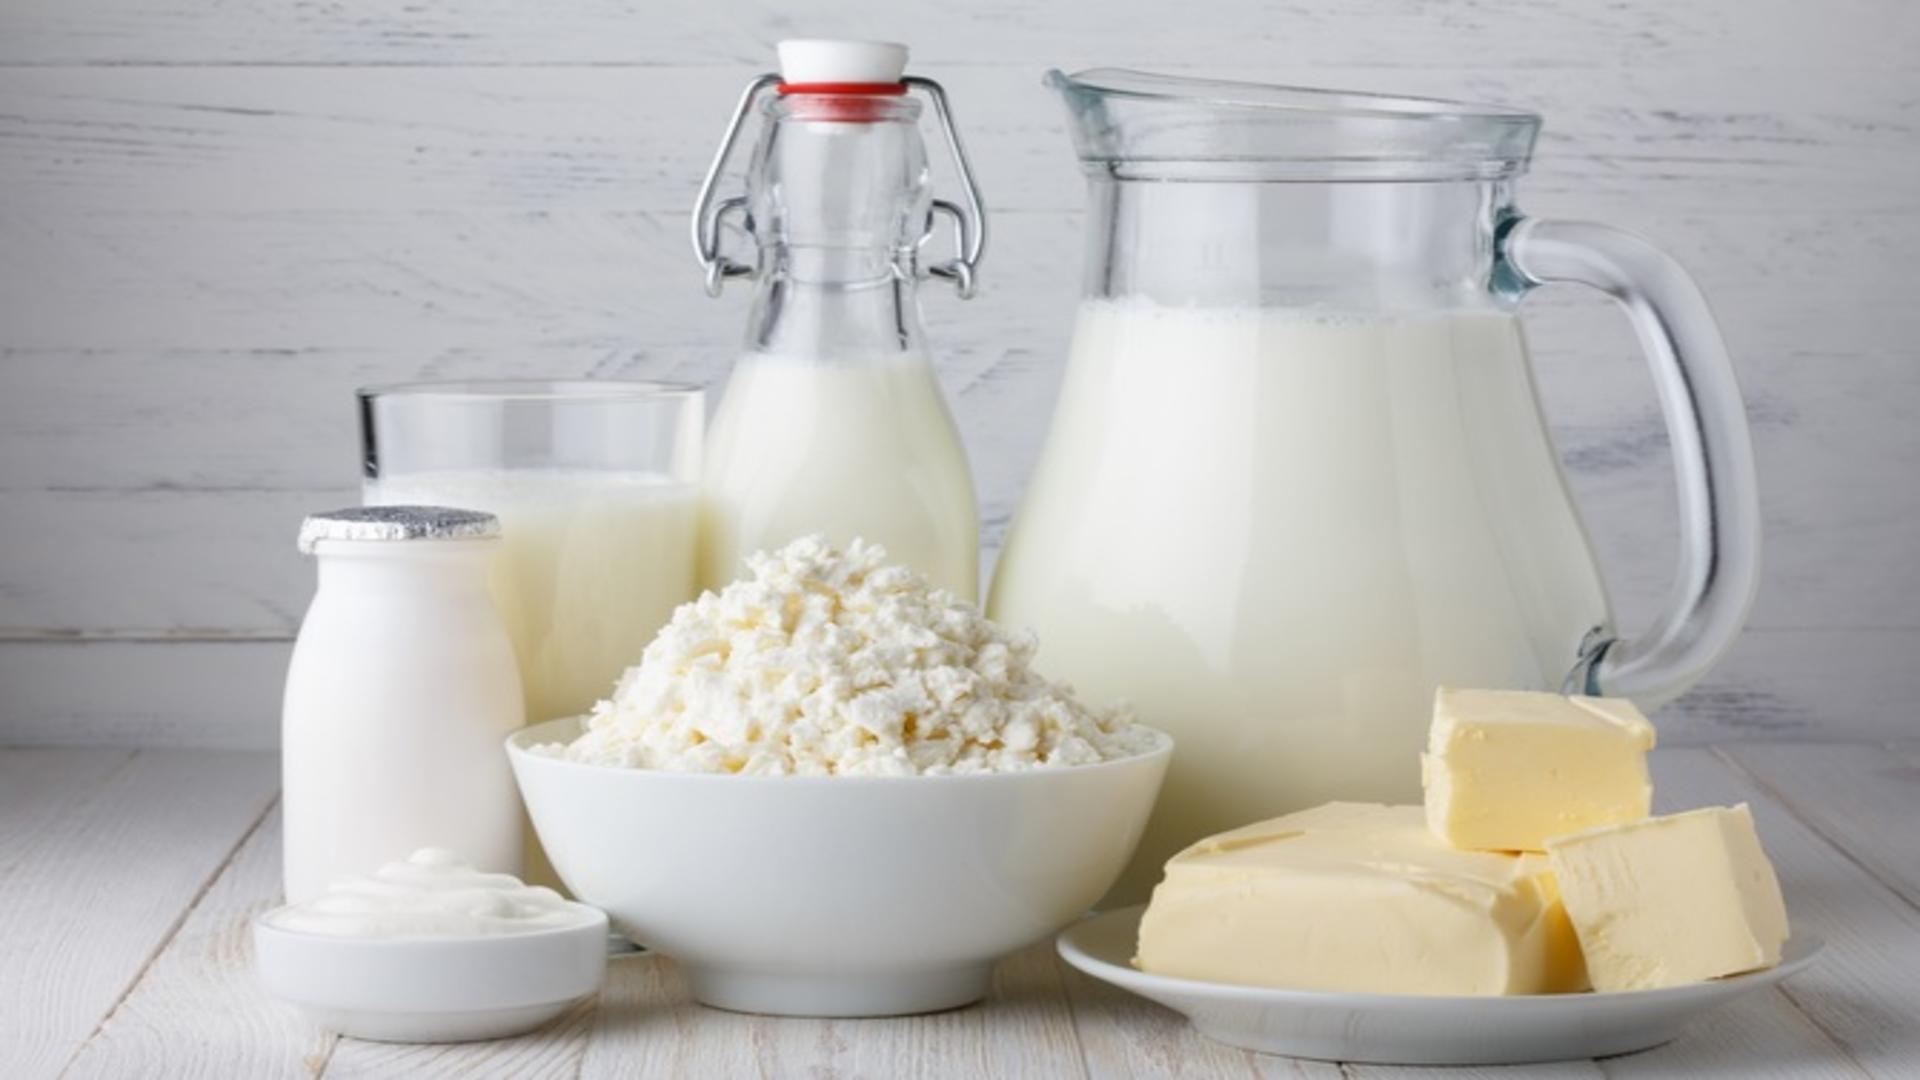 Guvernul a convenit cu supermarketurile și fermierii o scădere a prețului laptelui timp de 6 luni